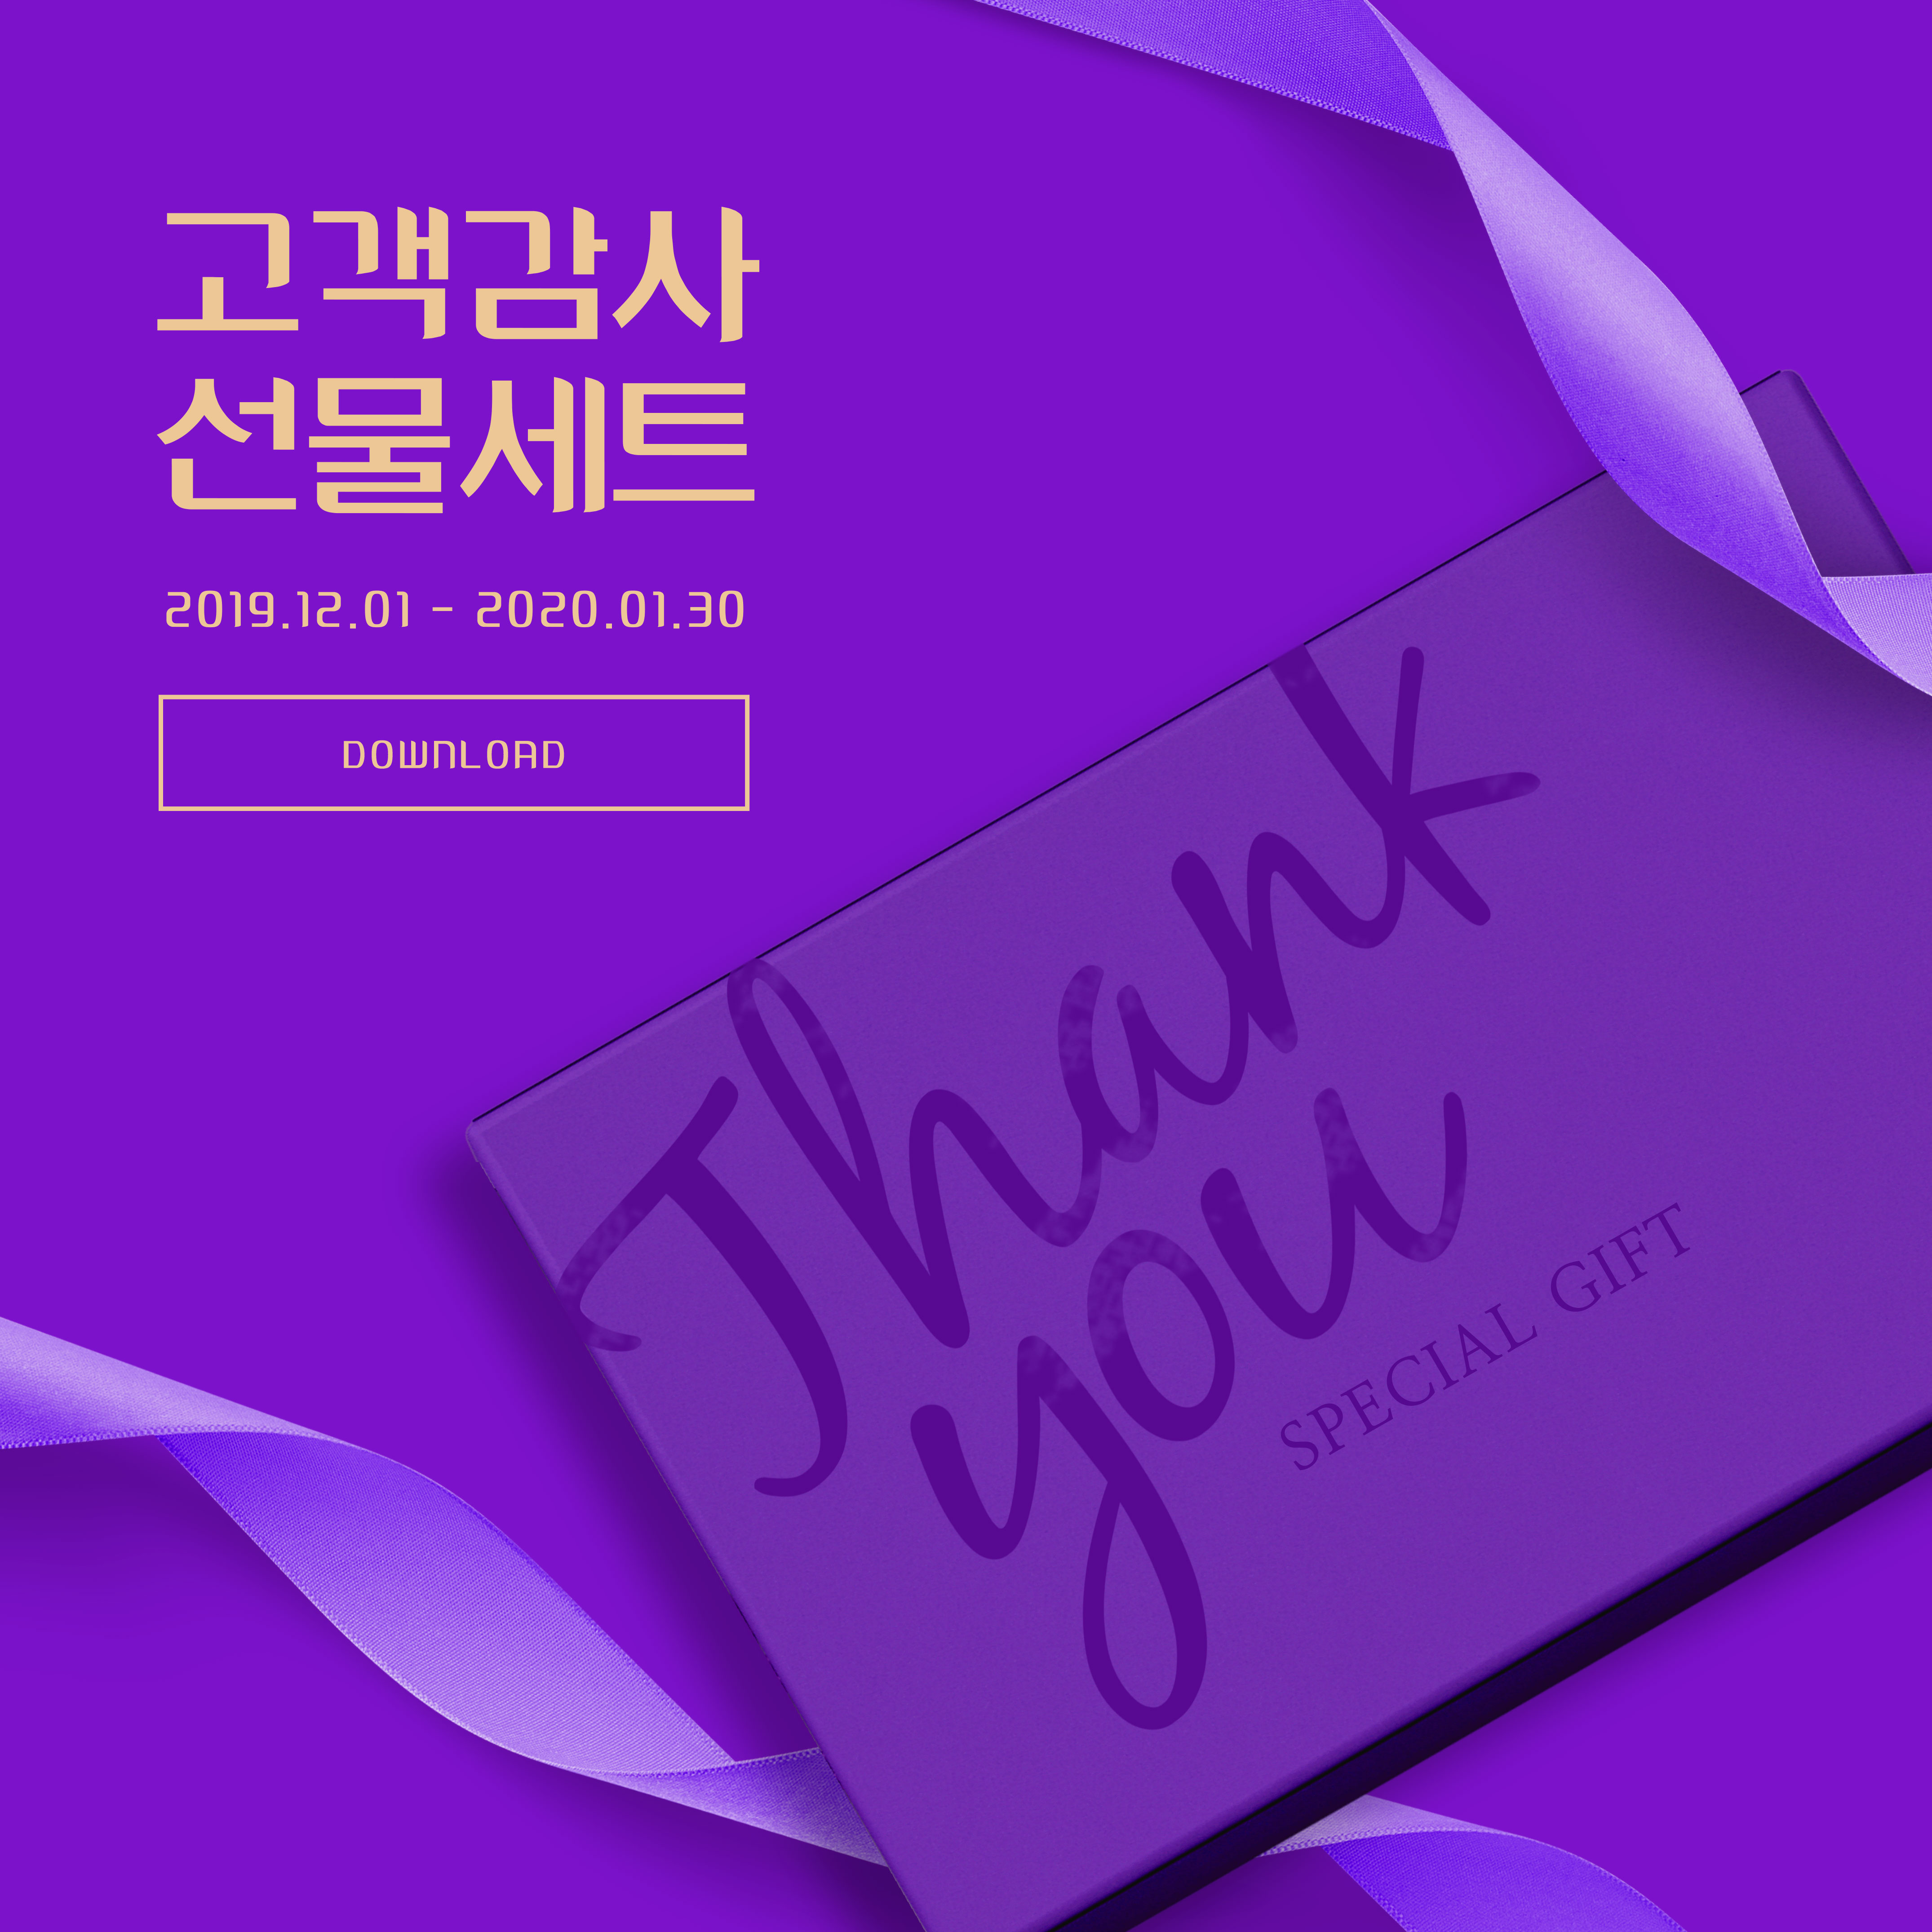 周年纪念活动礼品回馈主题深紫色海报PSD素材普贤居精选素材插图